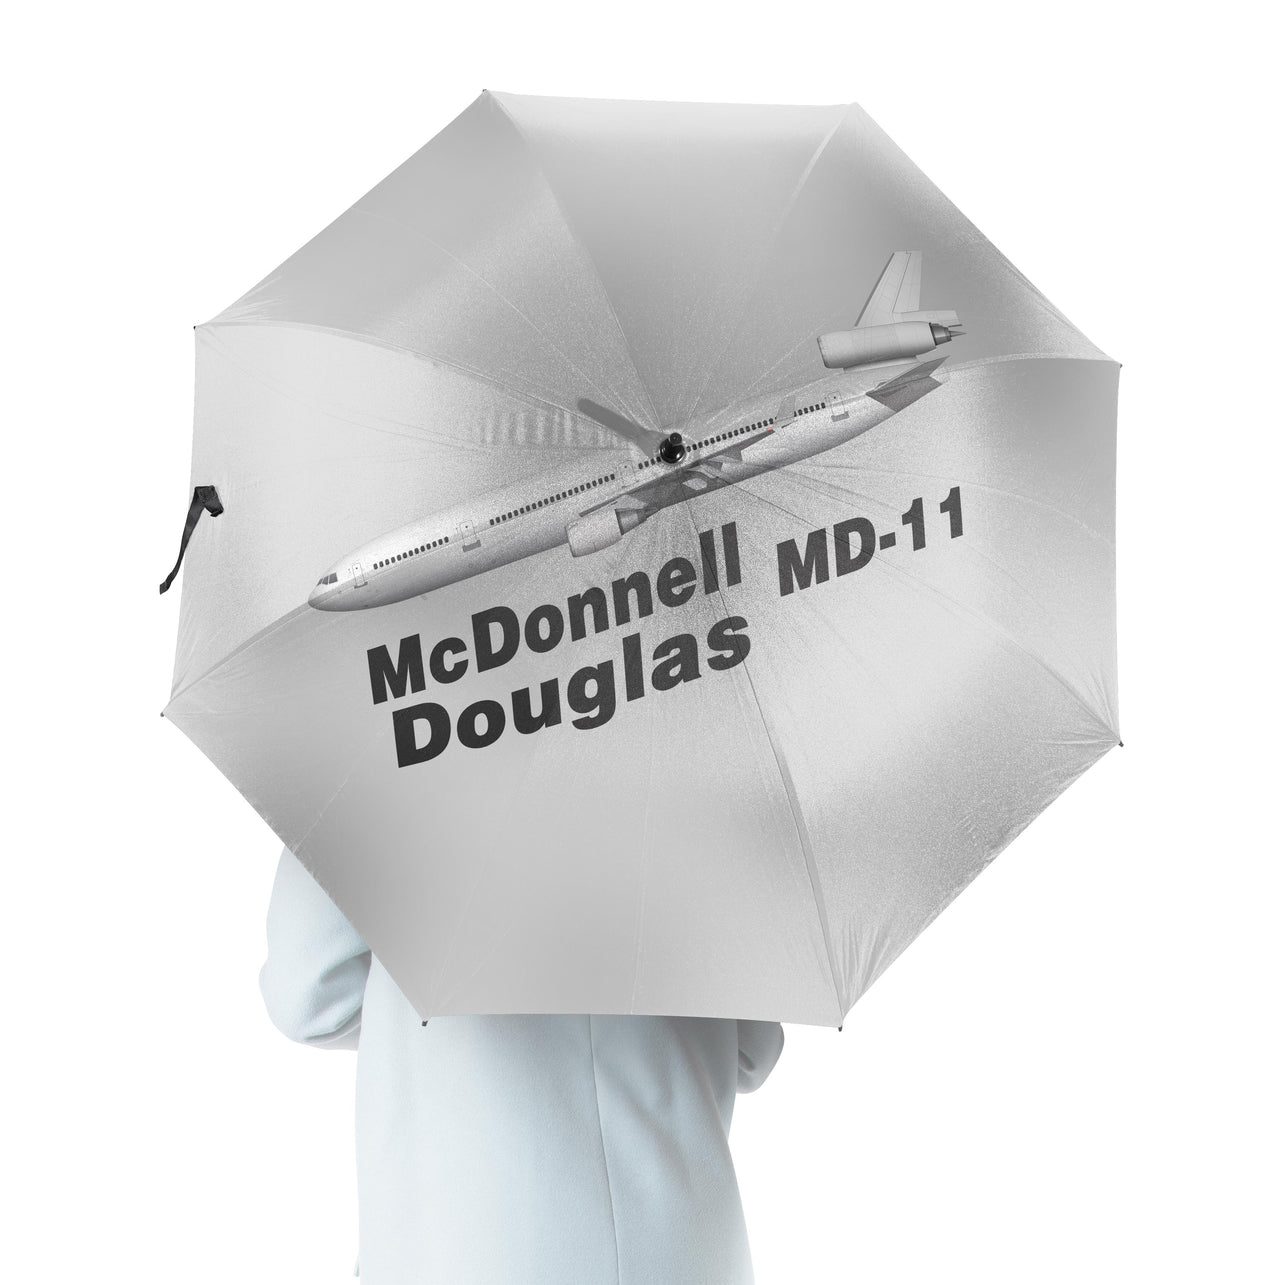 The McDonnell Douglas MD-11 Designed Umbrella